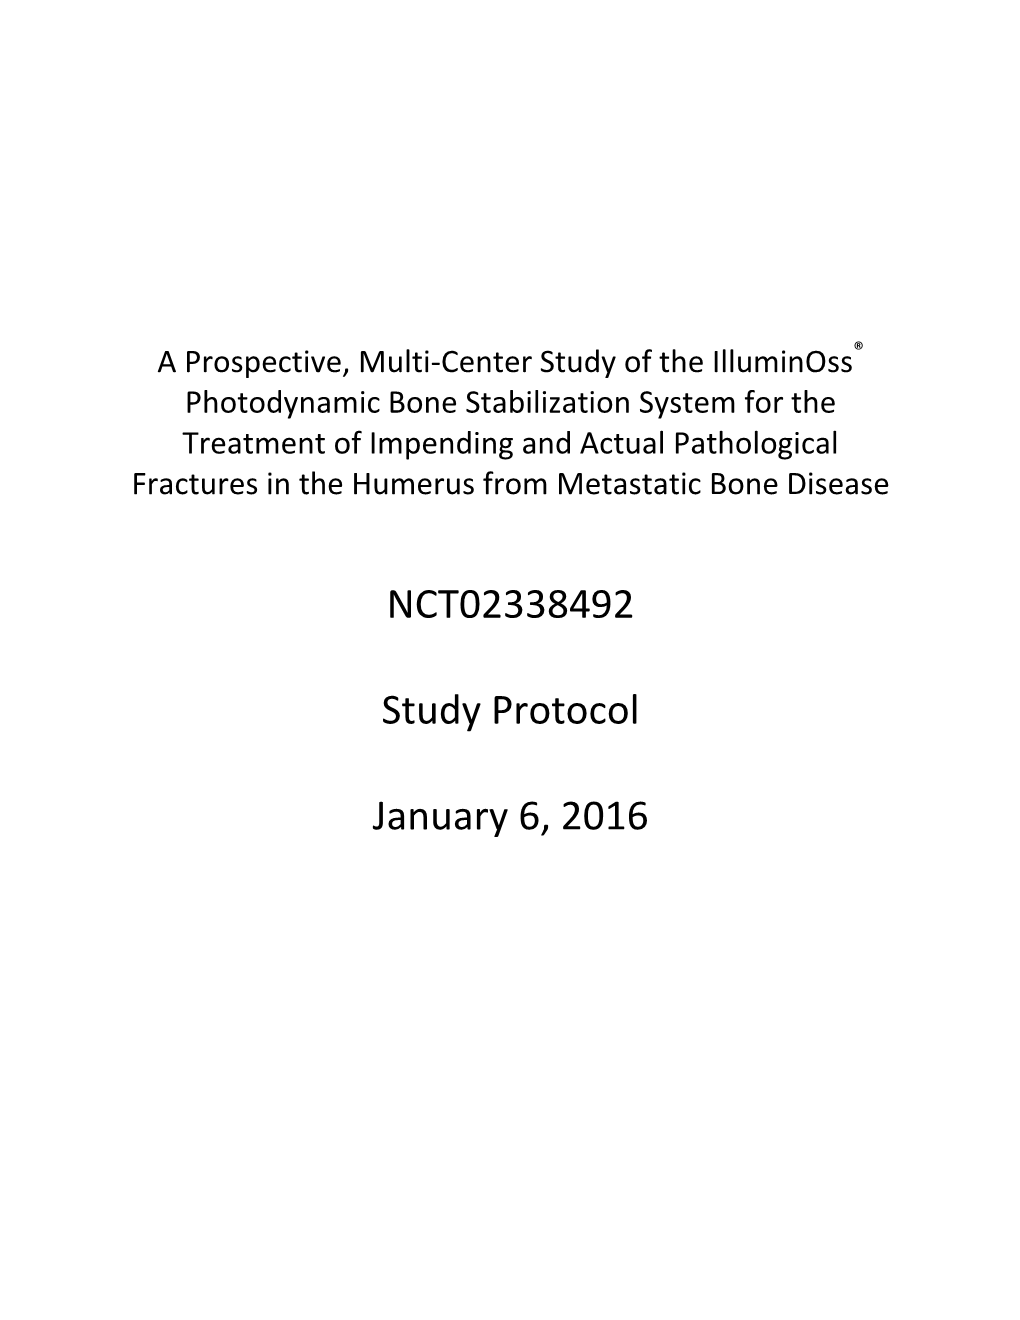 NCT02338492 Study Protocol January 6, 2016